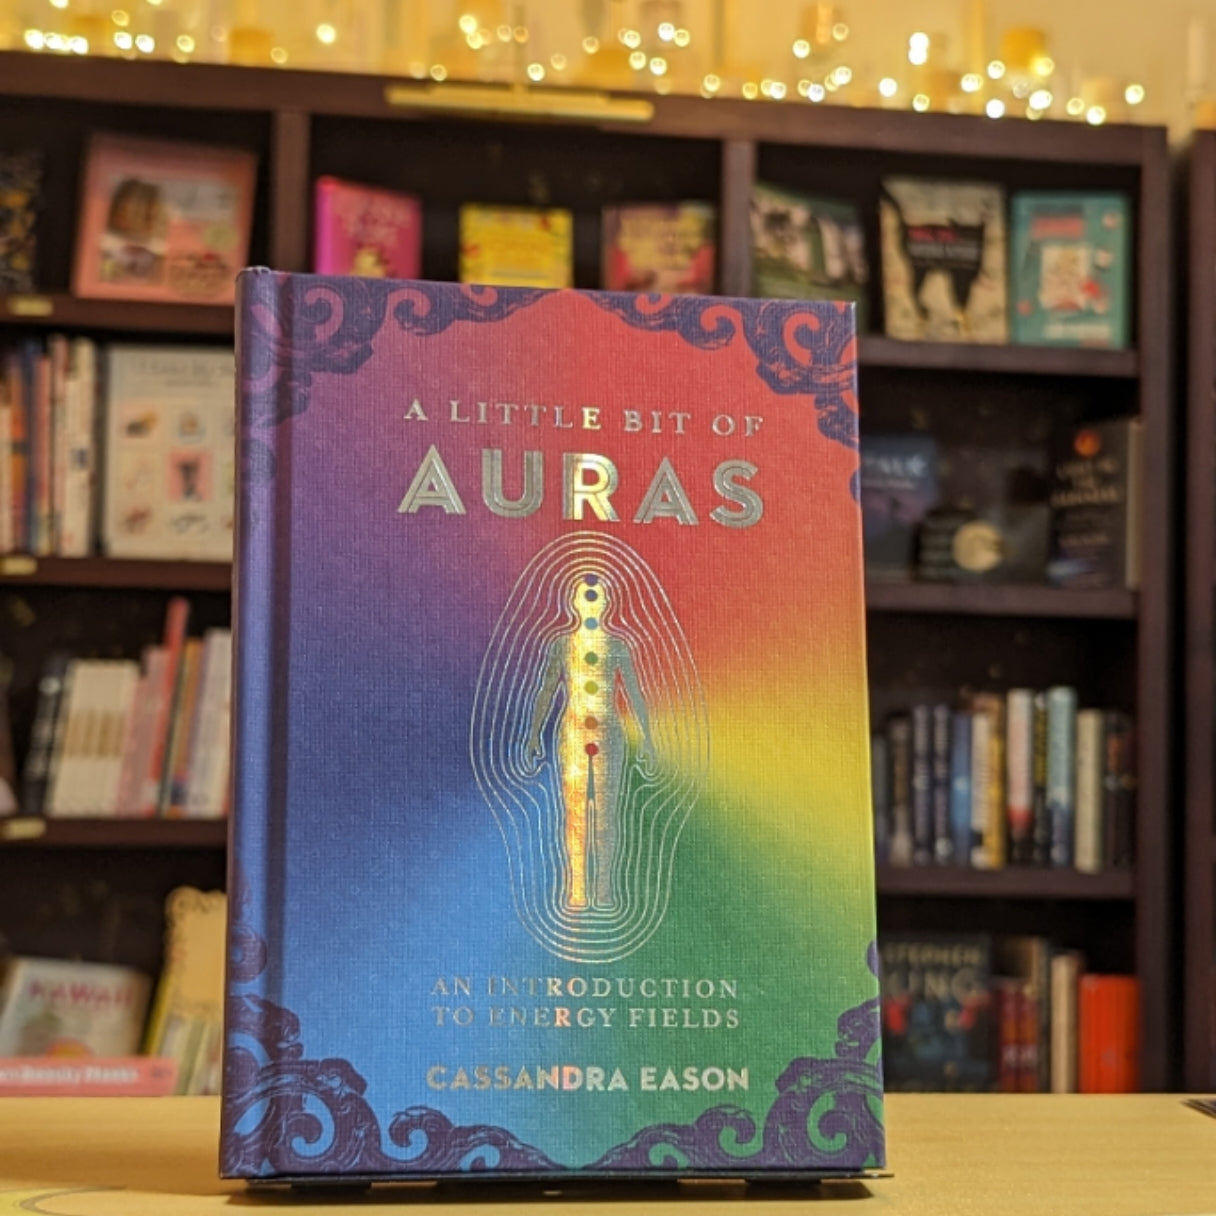 A Little Bit of Auras: An Introduction to Energy Fields (Volume 9) (Little Bit Series)